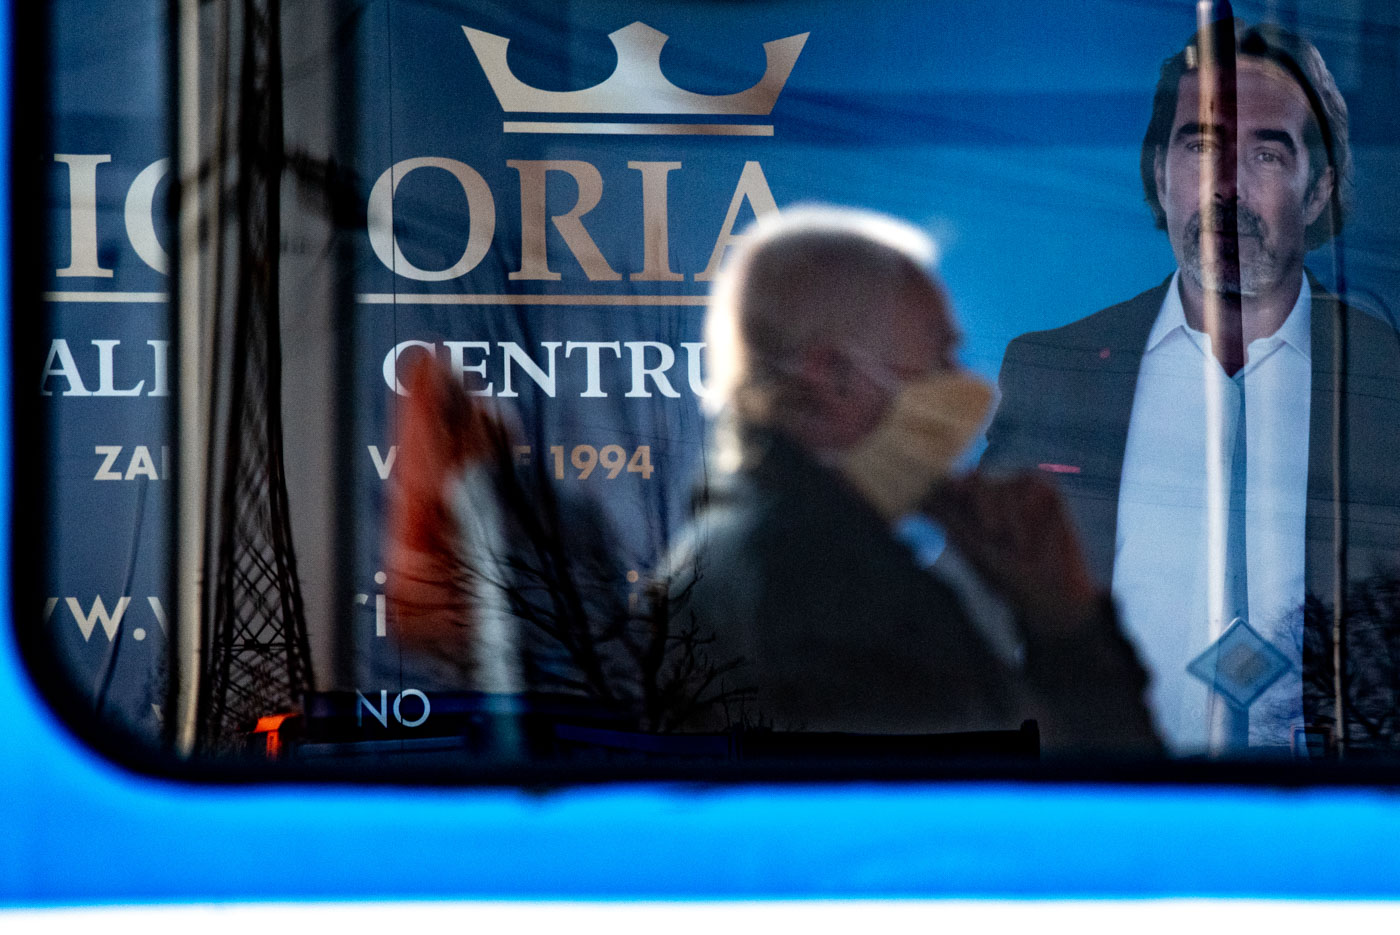 Starší muž s nasazenou rouškou jede v tramvaji. Vláda České republiky vyhlásila karanténu, aby zamezila šíření novému koronavirovému onemocnění. 18. března 2020 v Ostravě. Foto: © Lukáš Ston/Moravskoslezský deník.